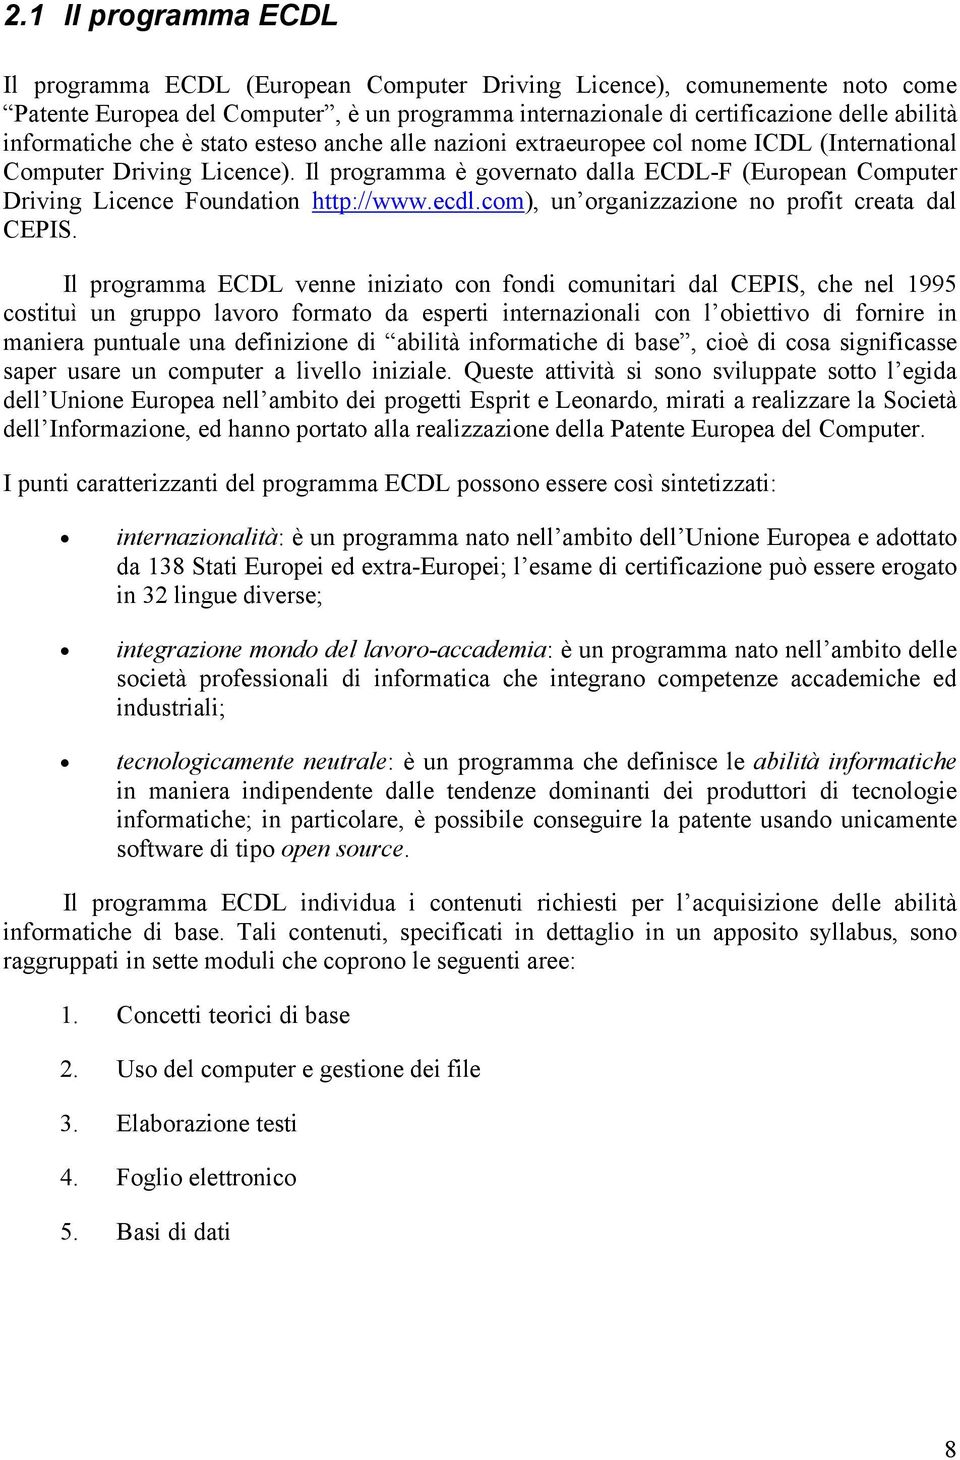 Il programma è governato dalla ECDL-F (European Computer Driving Licence Foundation http://www.ecdl.com), un organizzazione no profit creata dal CEPIS.